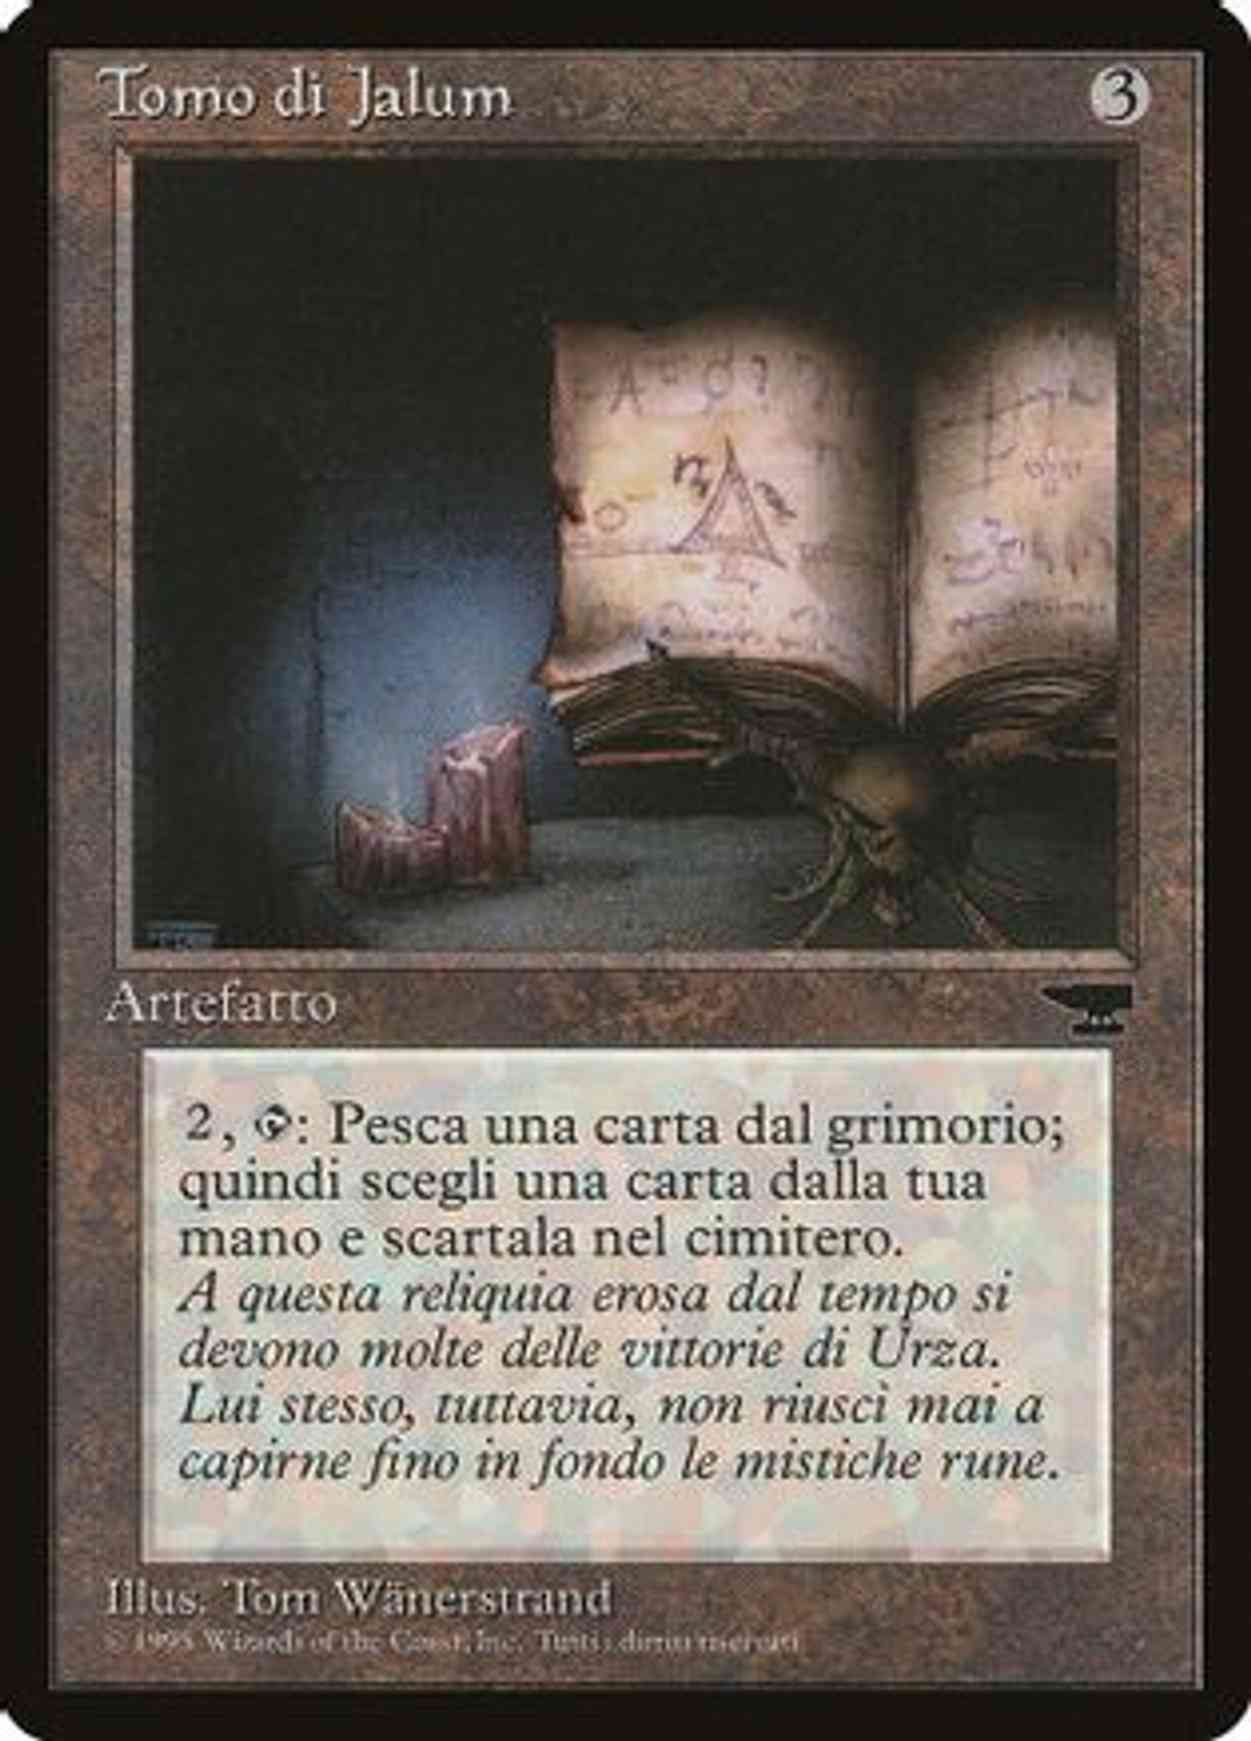 Jalum Tome (Italian) - "Tomo di Jalum" magic card front